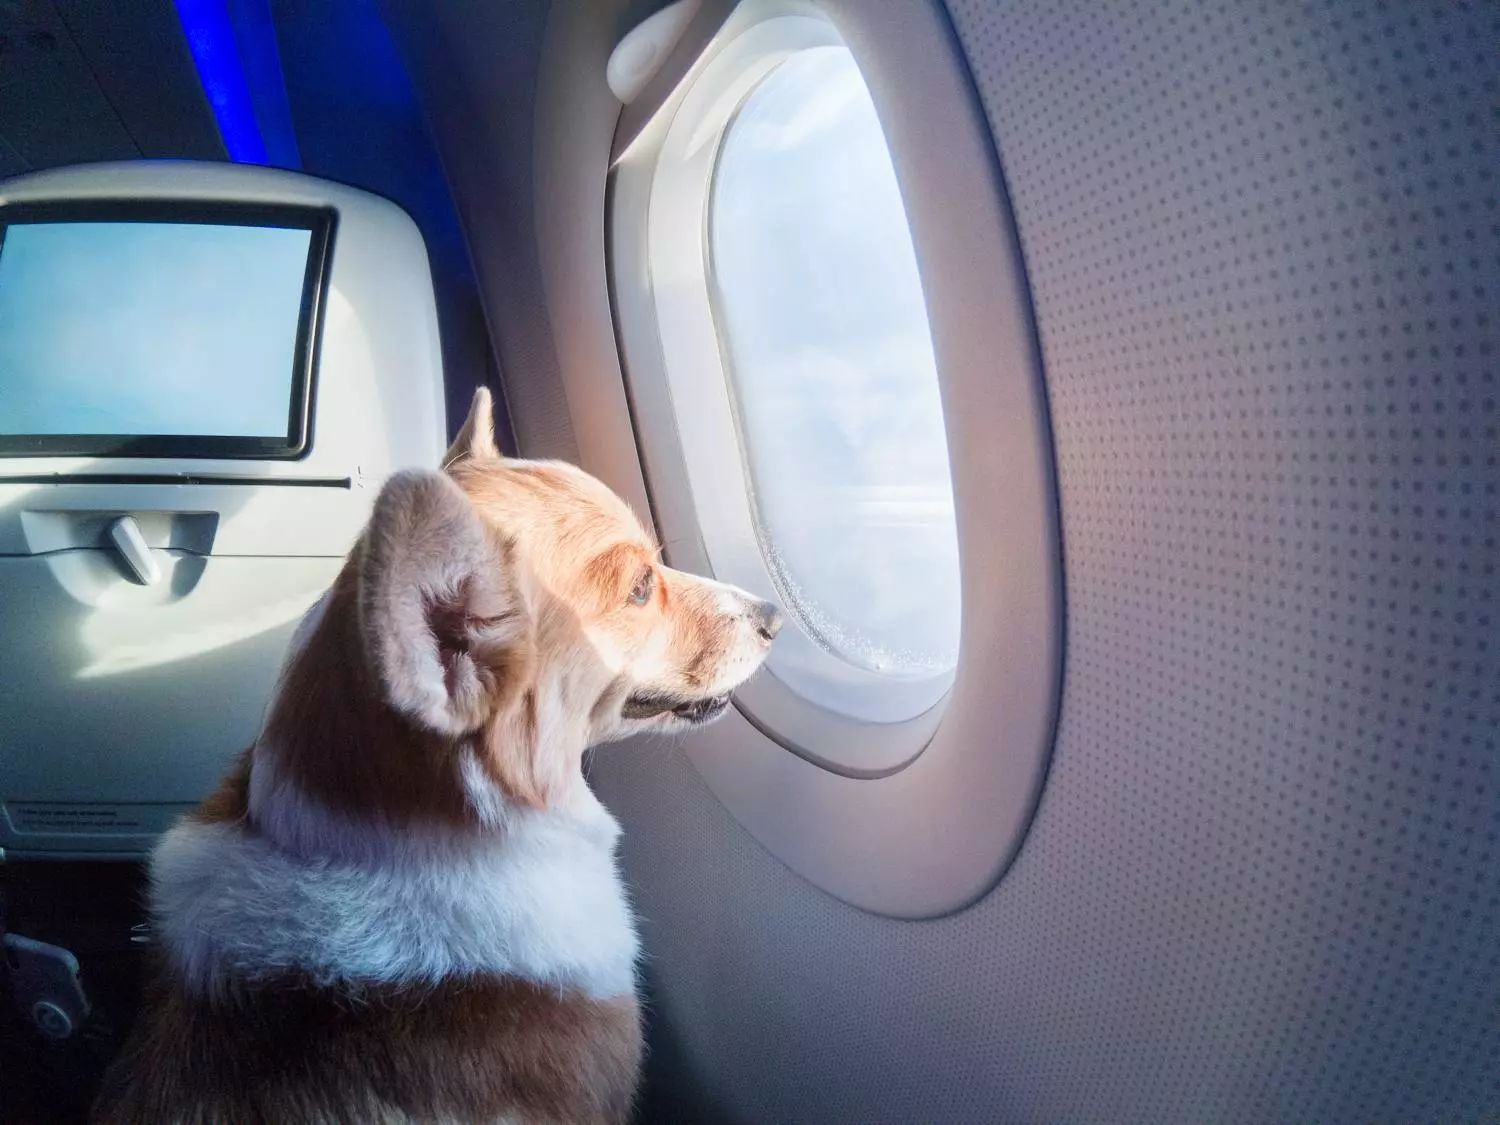 Как перевозят животных в самолете 2020: правила, стоимость, справка | авиакомпании и авиалинии россии и мира